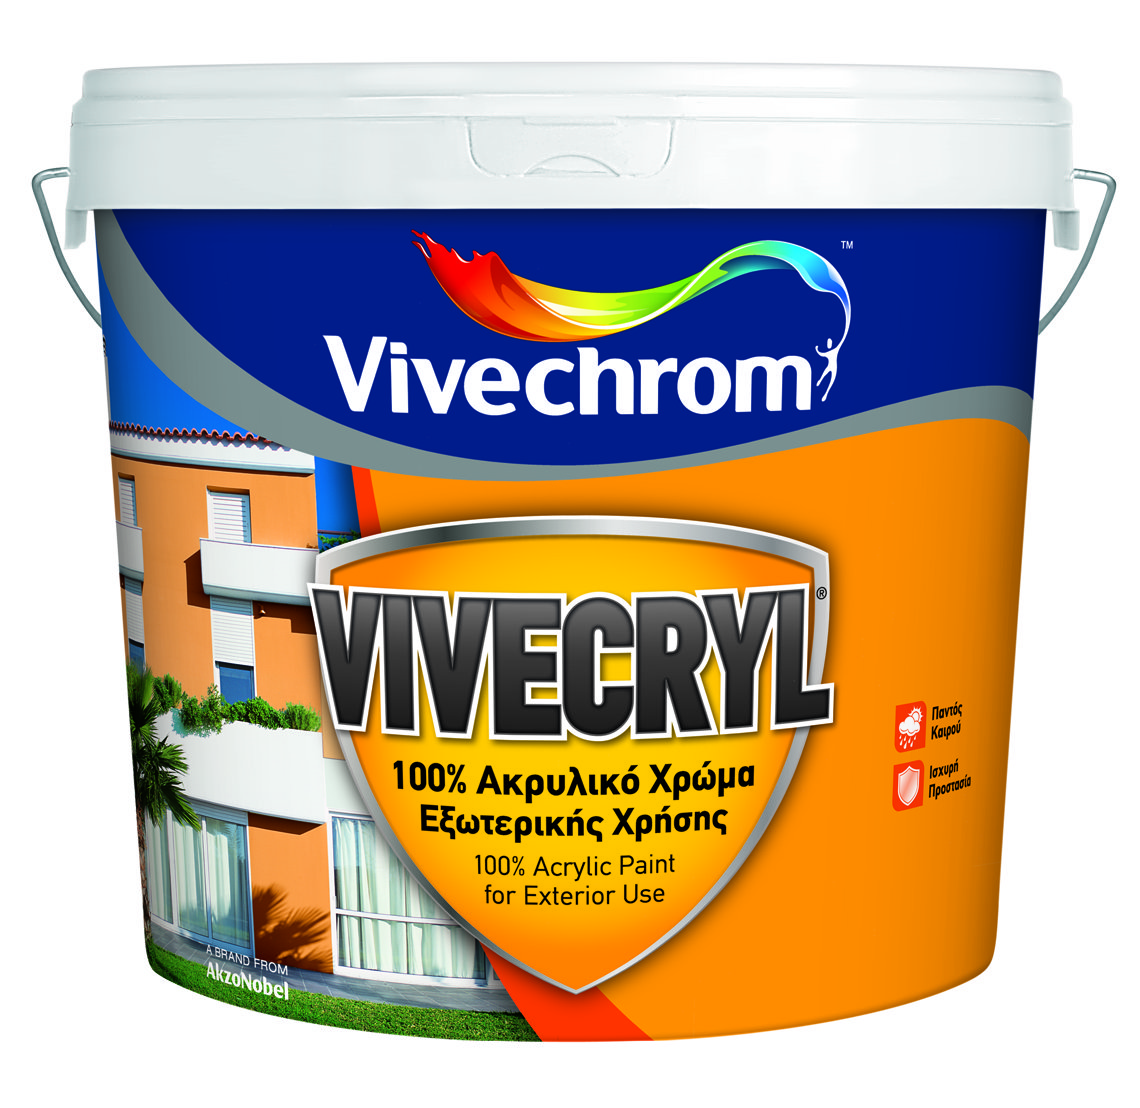 Vivechrom Vivecryl Matt Finish White 3L